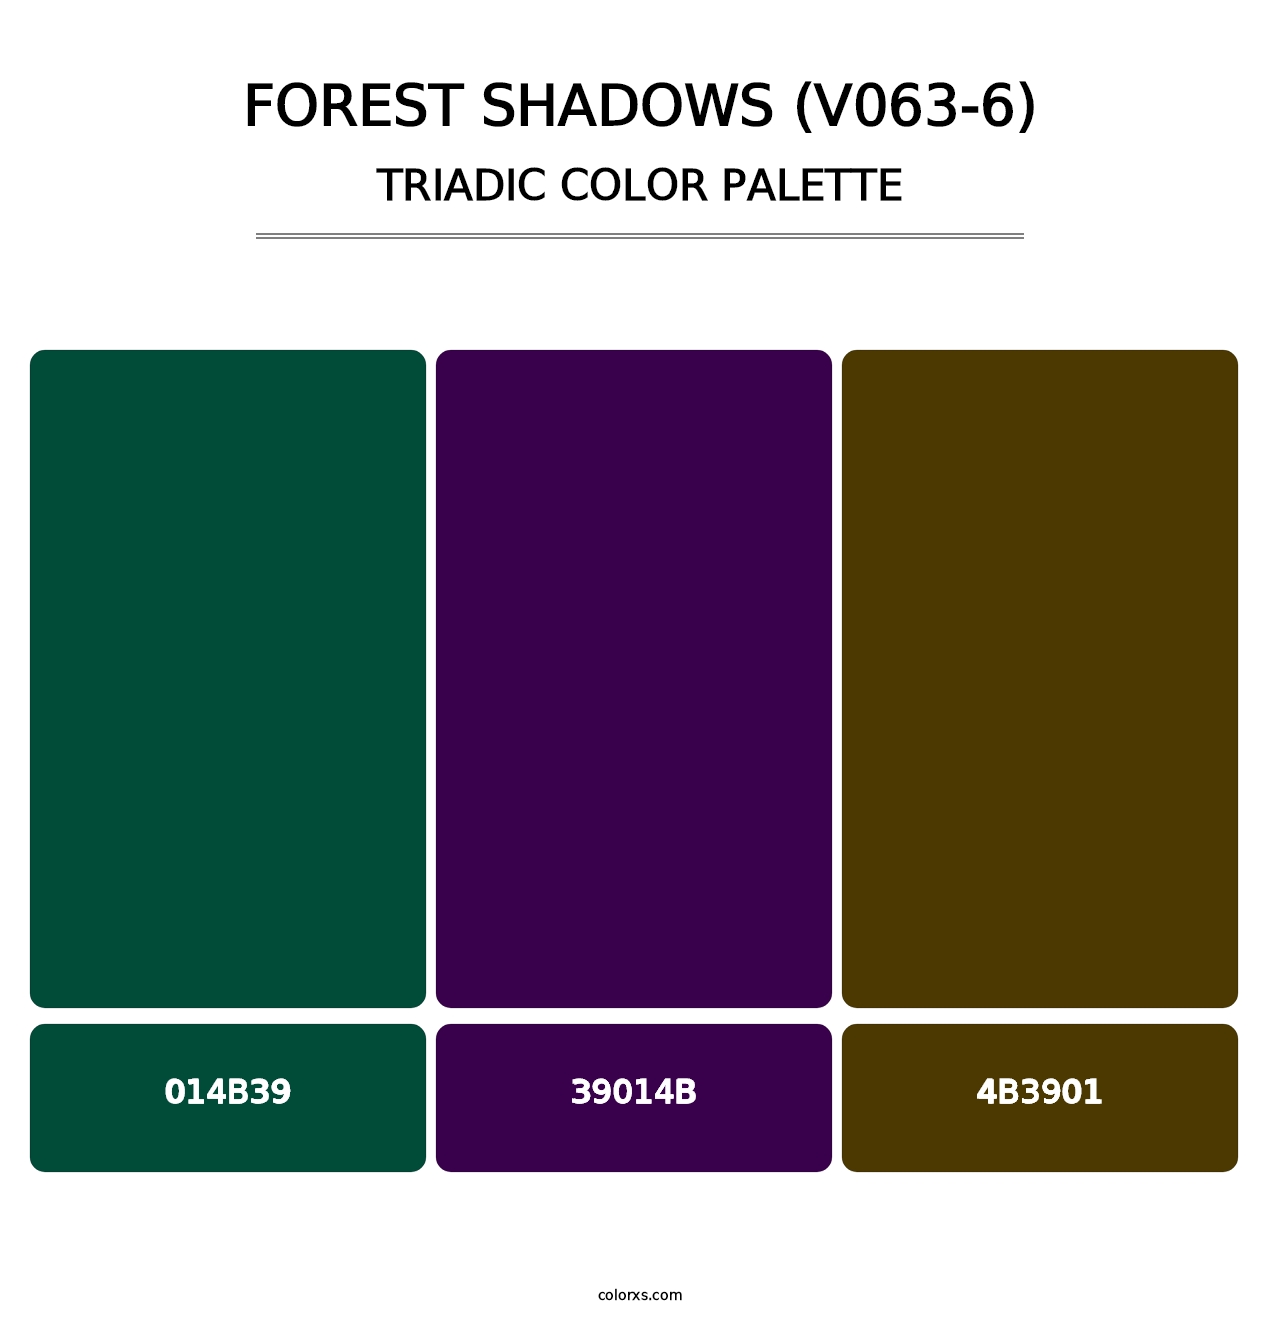 Forest Shadows (V063-6) - Triadic Color Palette